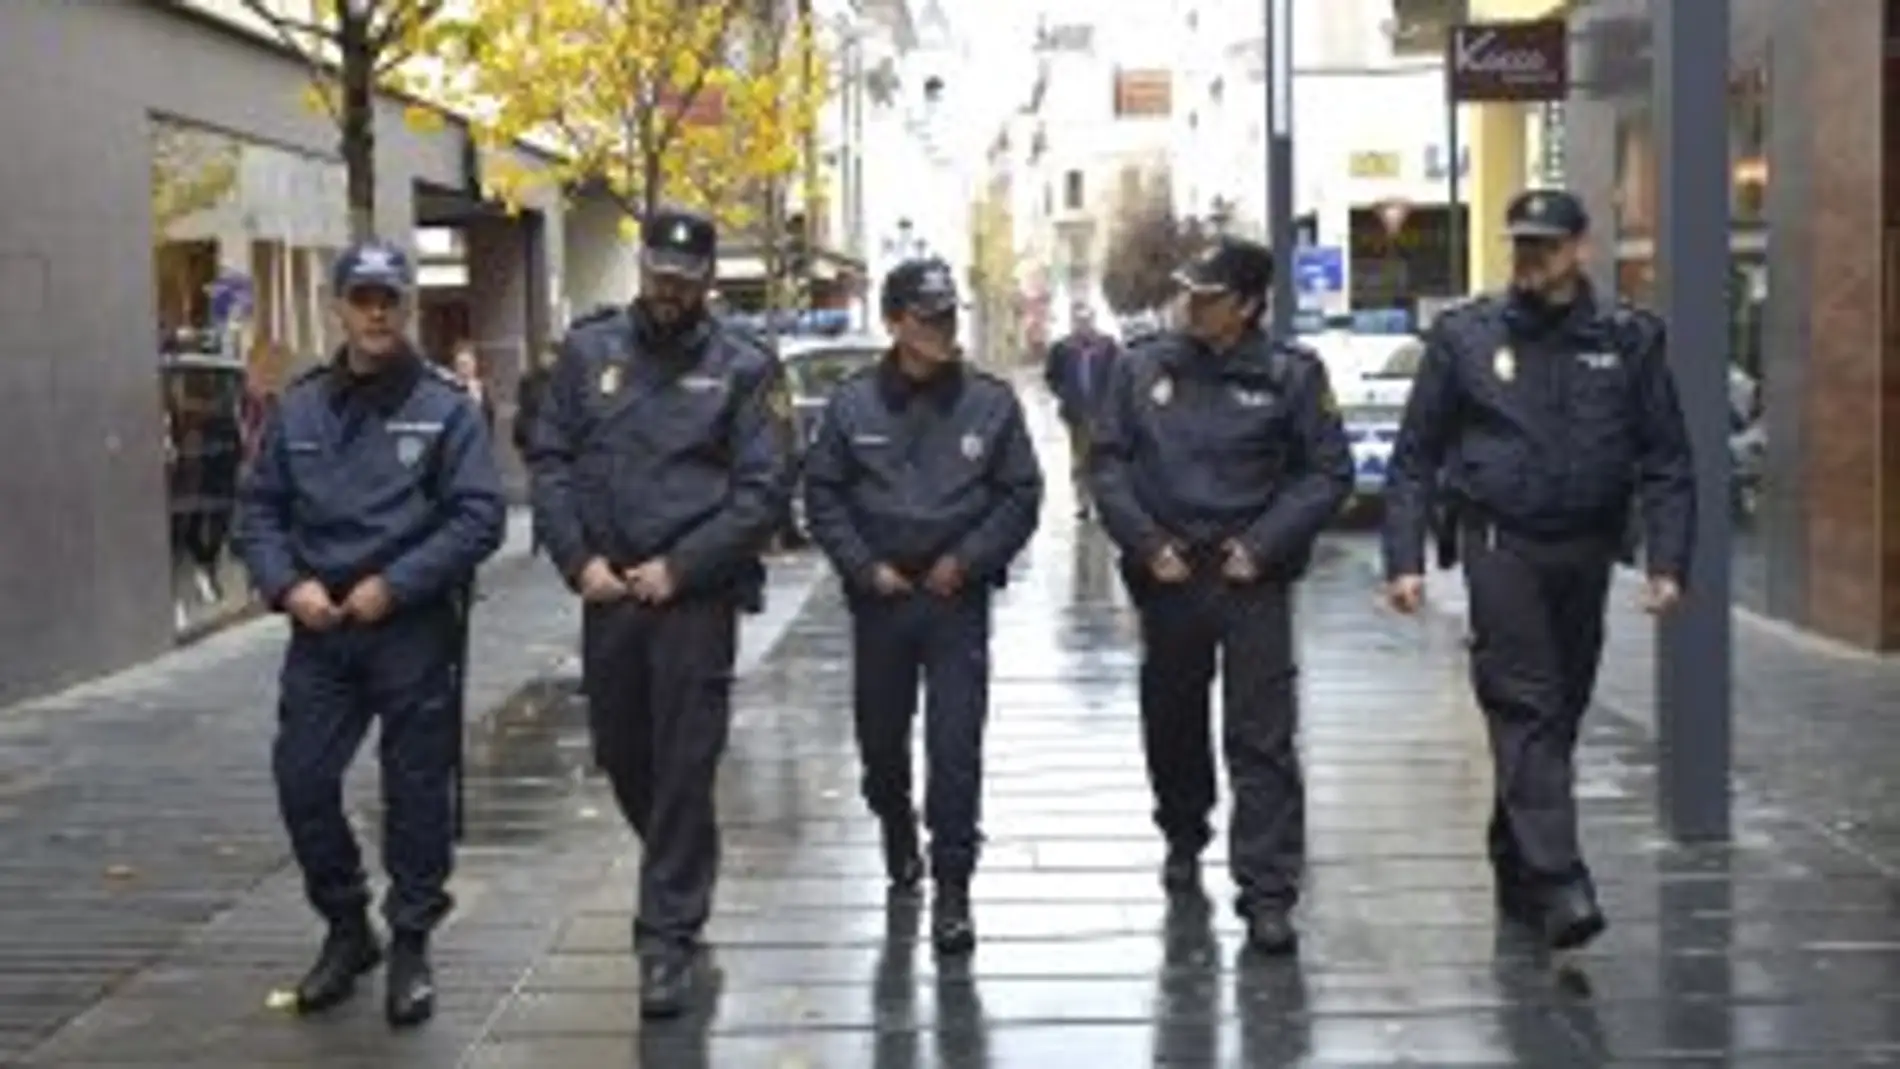 Las Fuerzas de Seguridad reforzarán la vigilancia en Badajoz, Cáceres y Plasencia, así como las fiestas en los pueblos